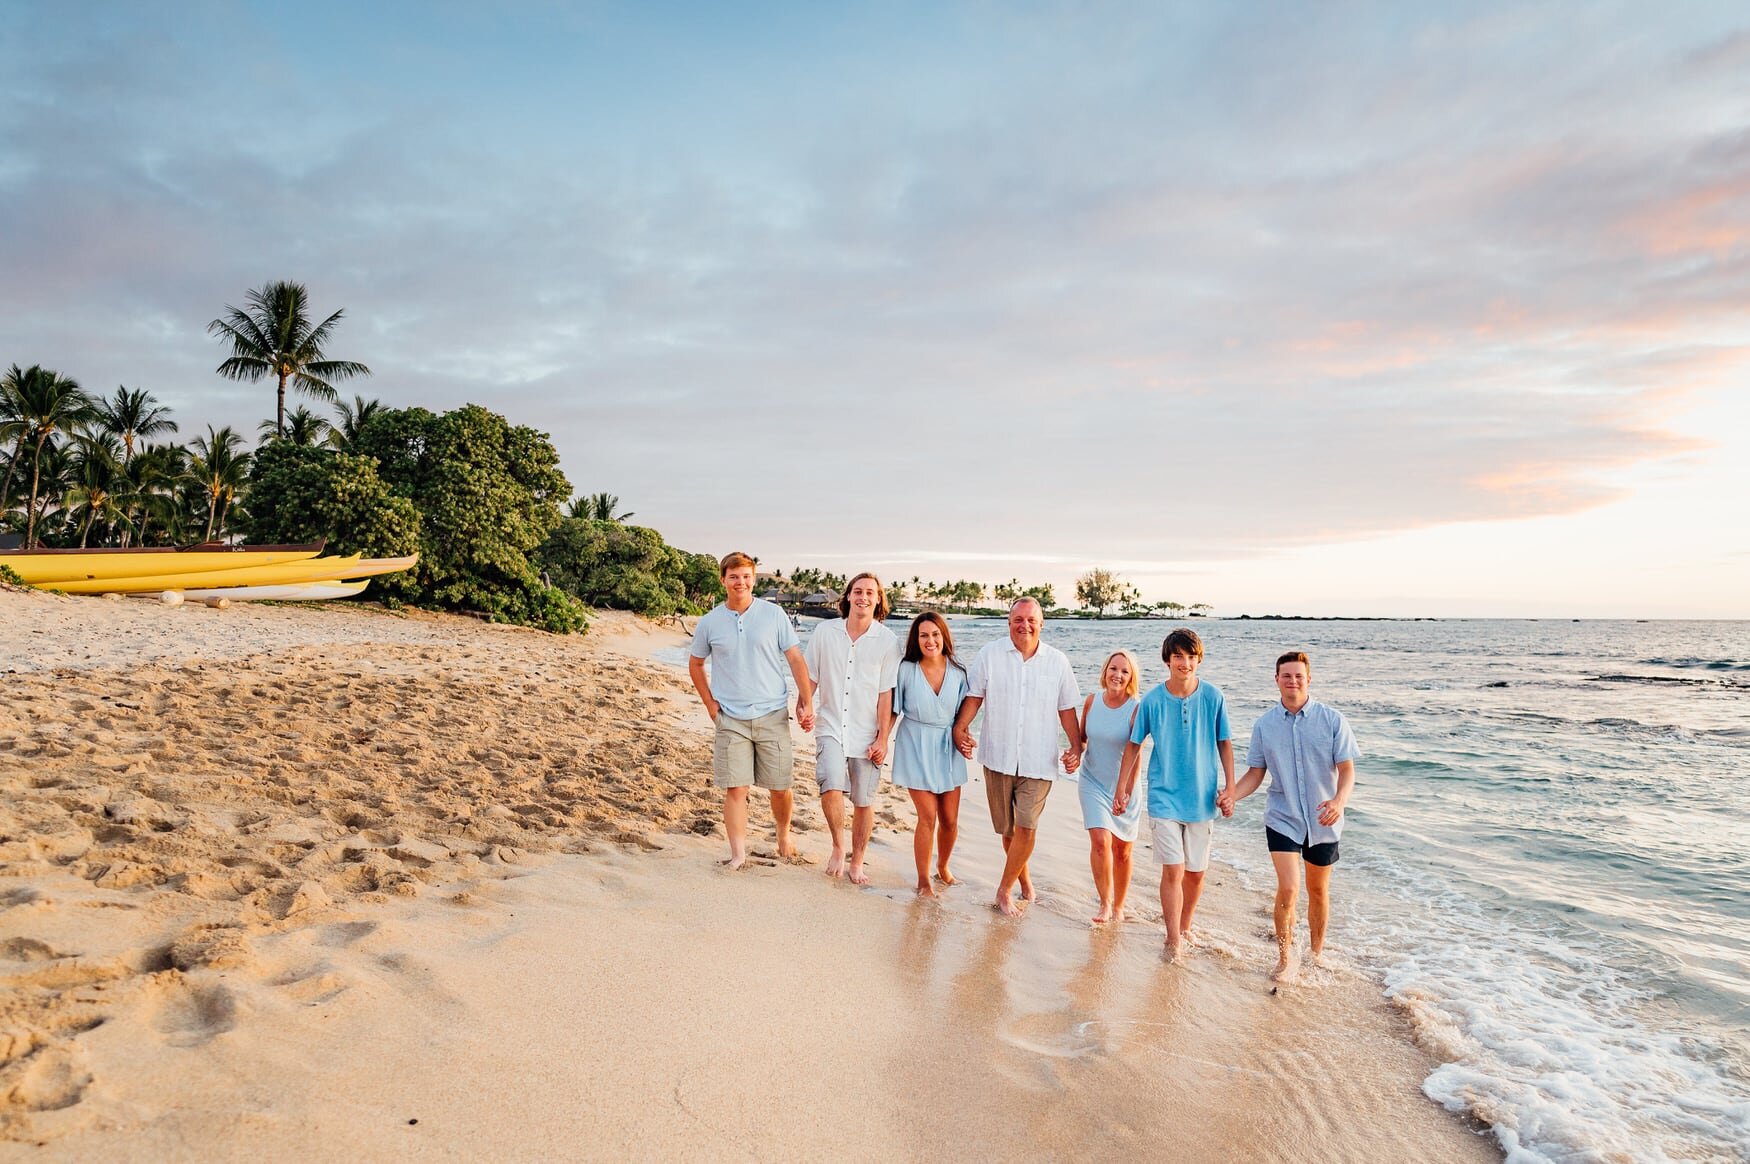 kailua-kona-photographers-beach-sunset-blue-white-outfits-35.jpg